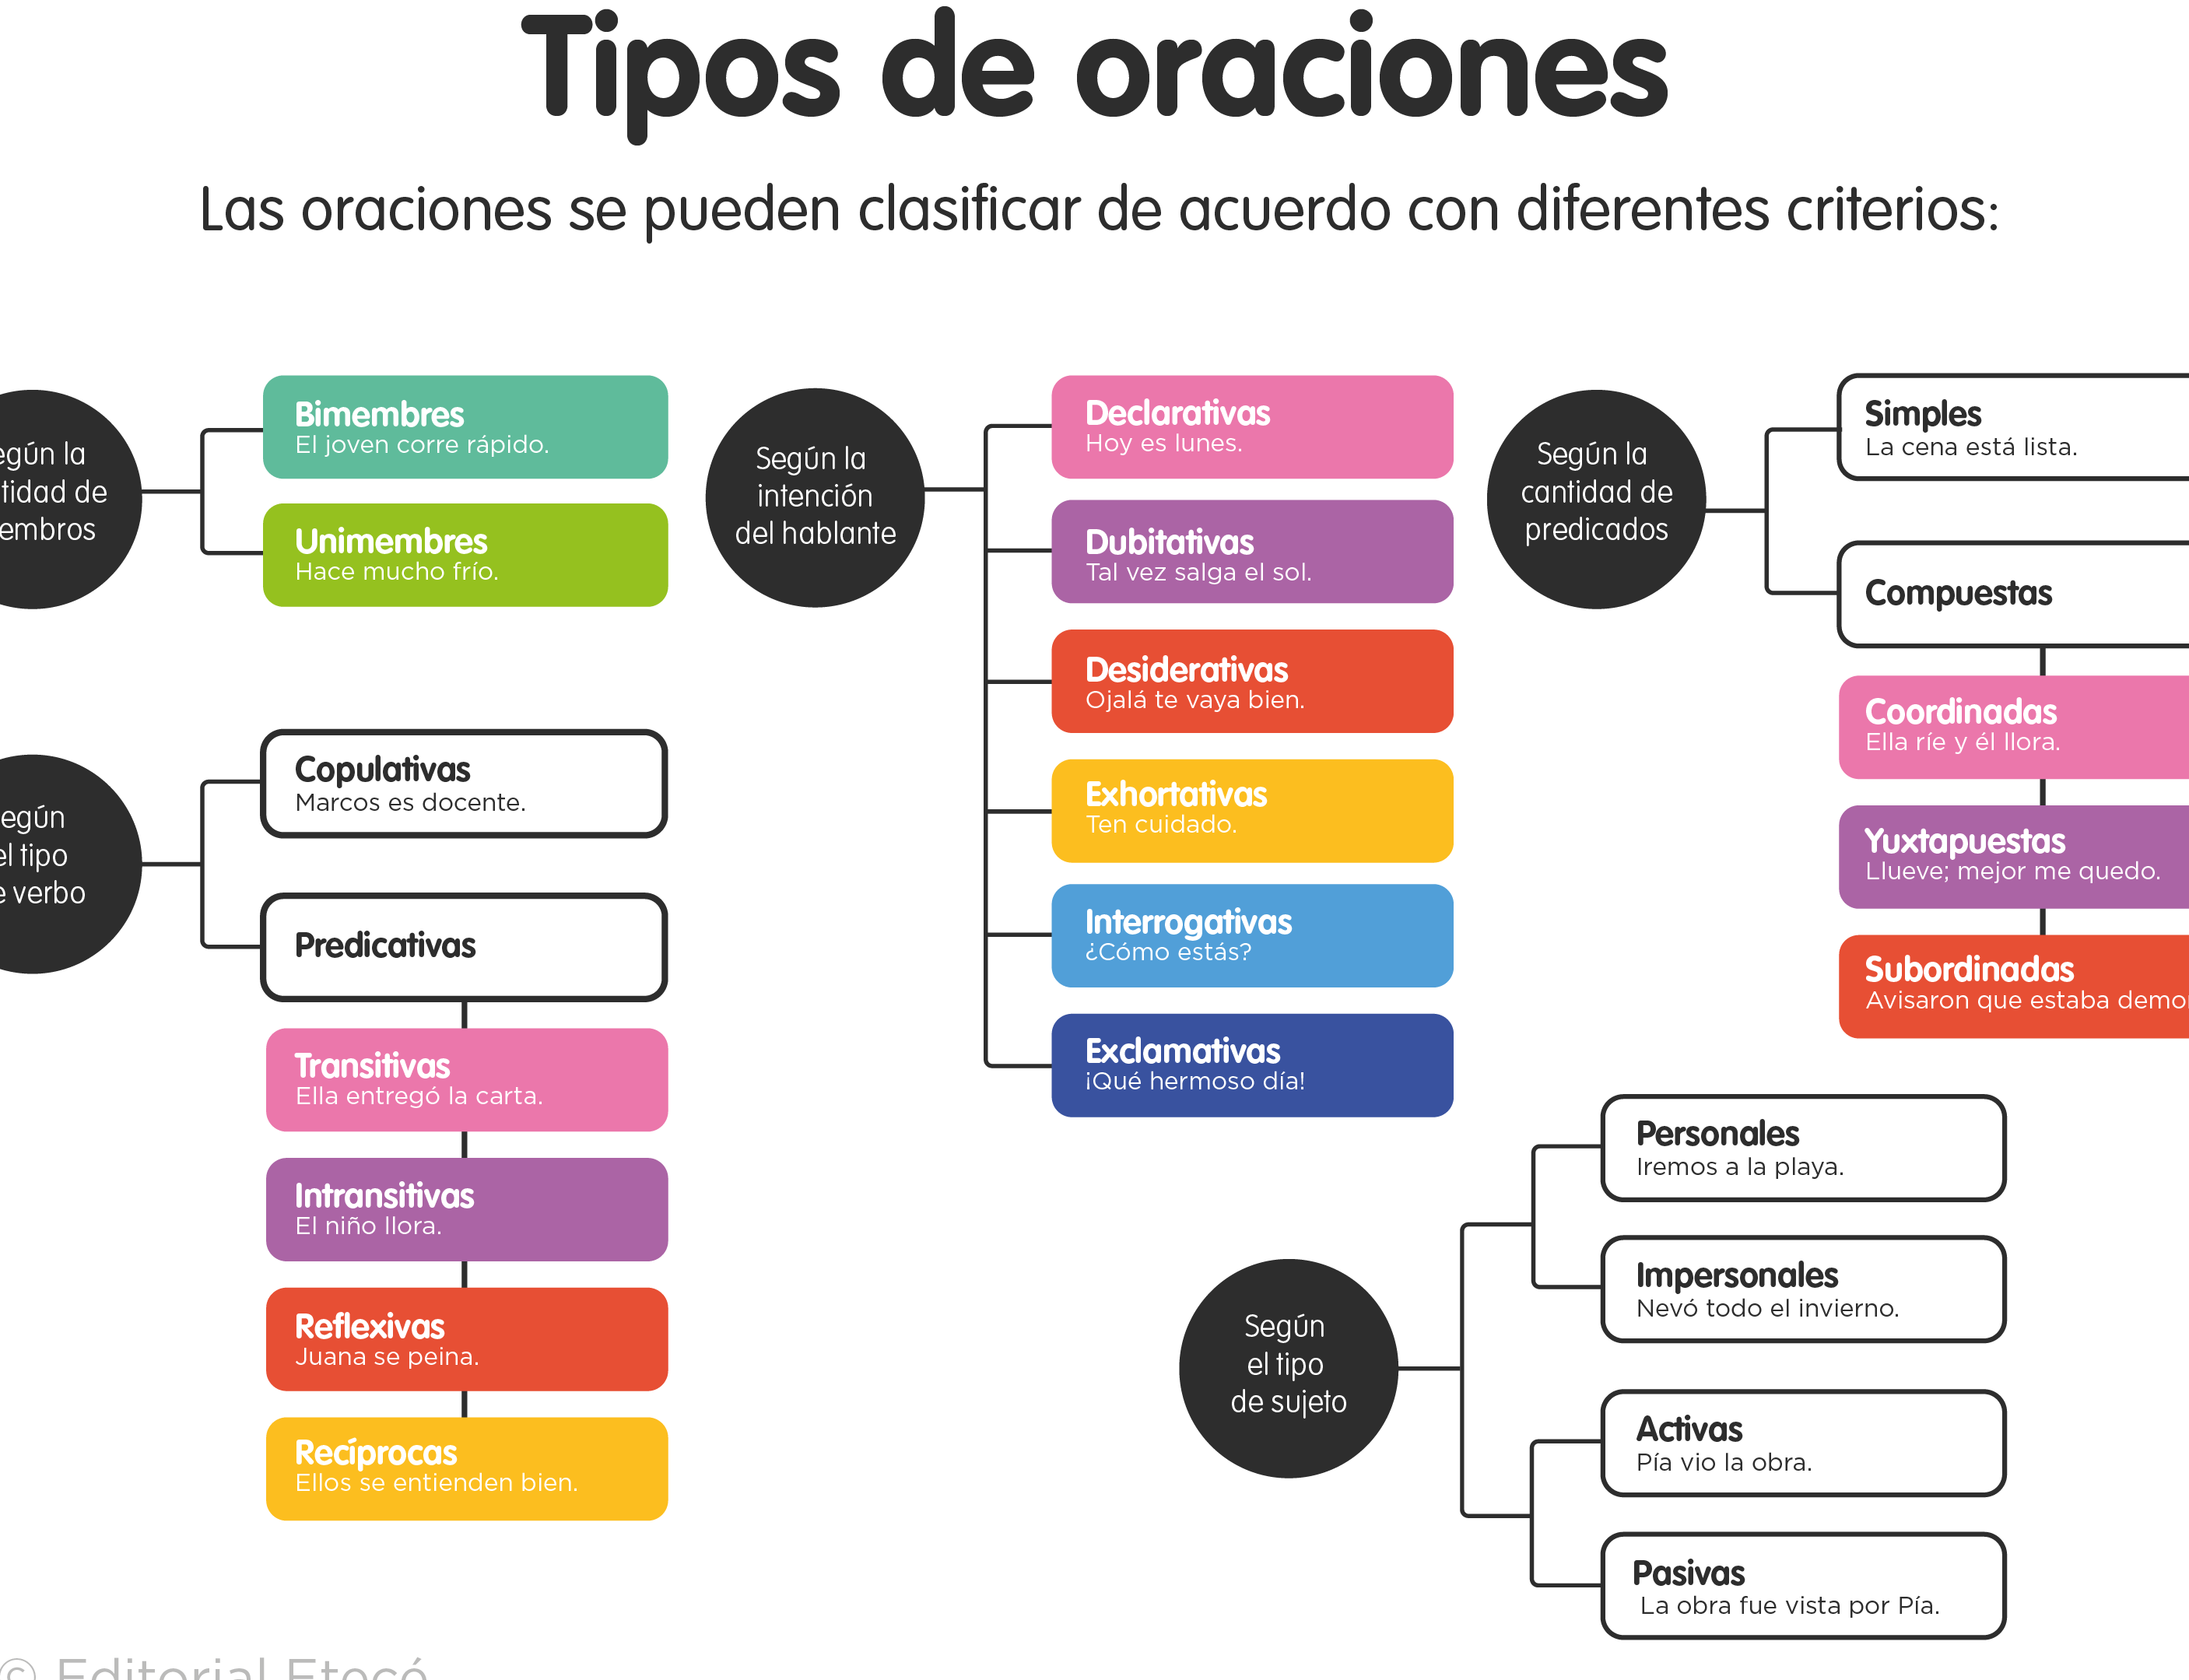 10 ejemplos de oraciones predicativas en espanol